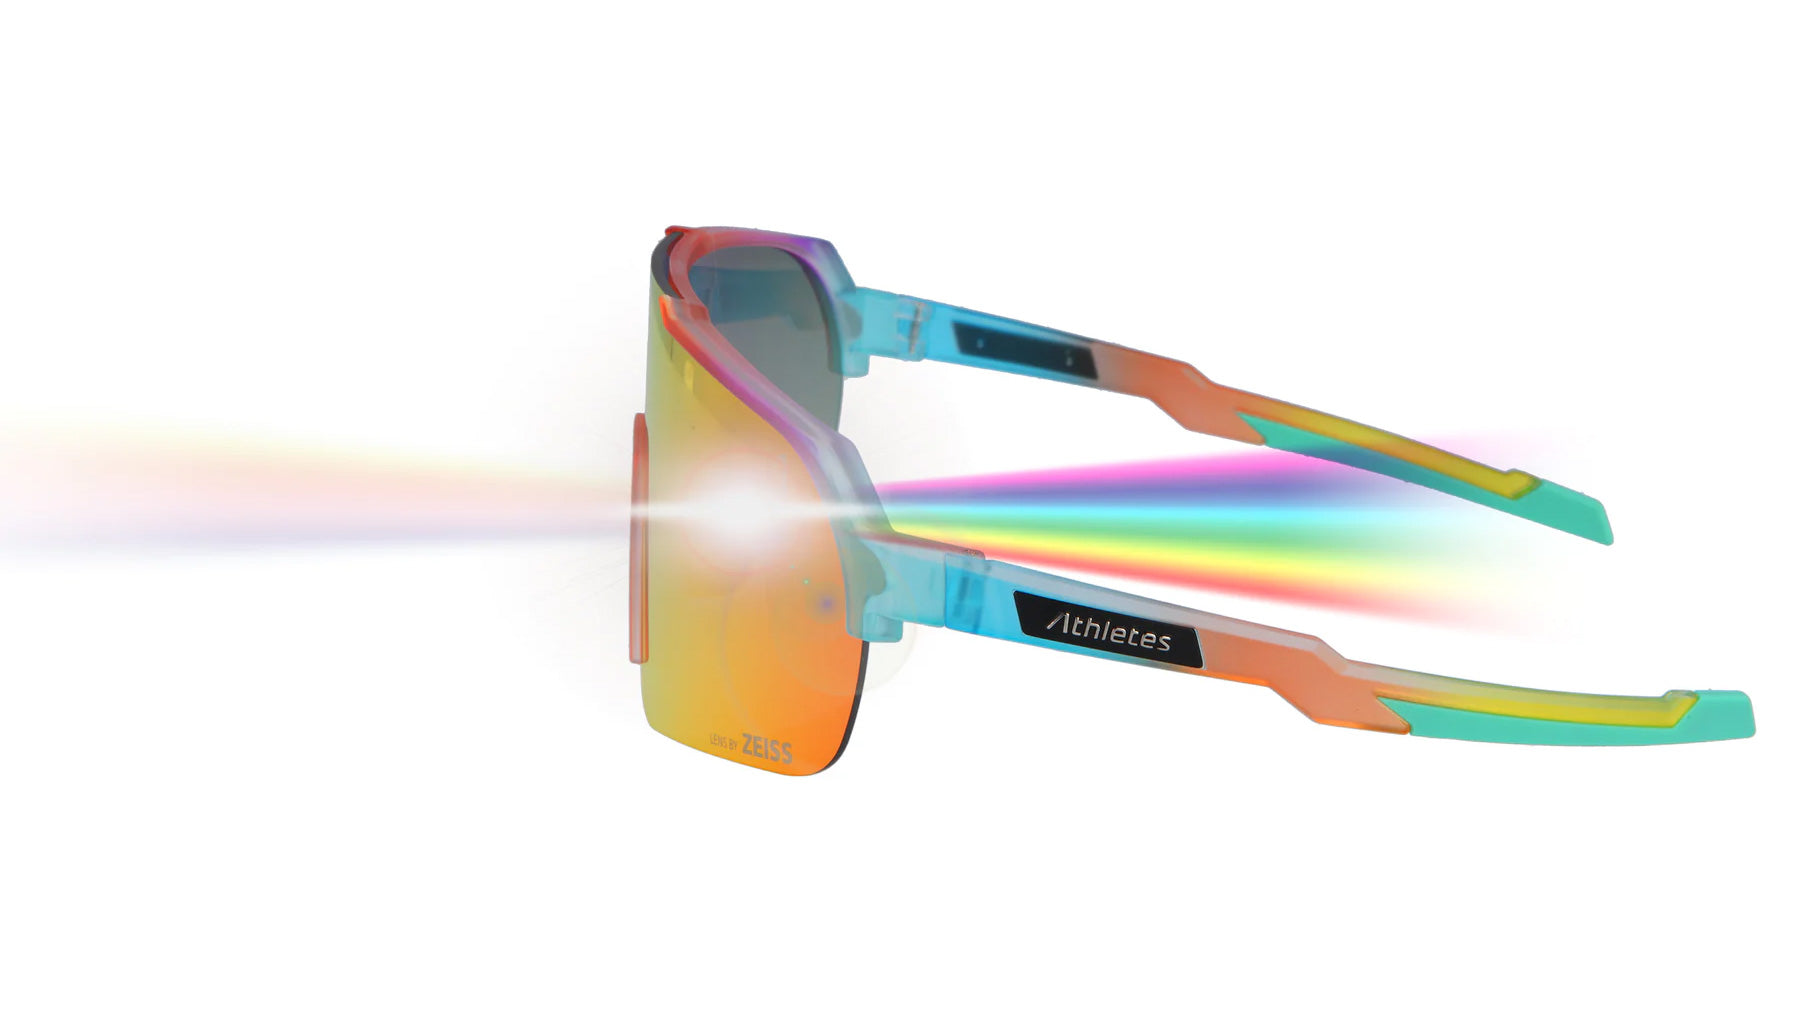 Bunte Sportsonnenbrille von Athletes Eyewear mit farbigen Reflexionen und Features